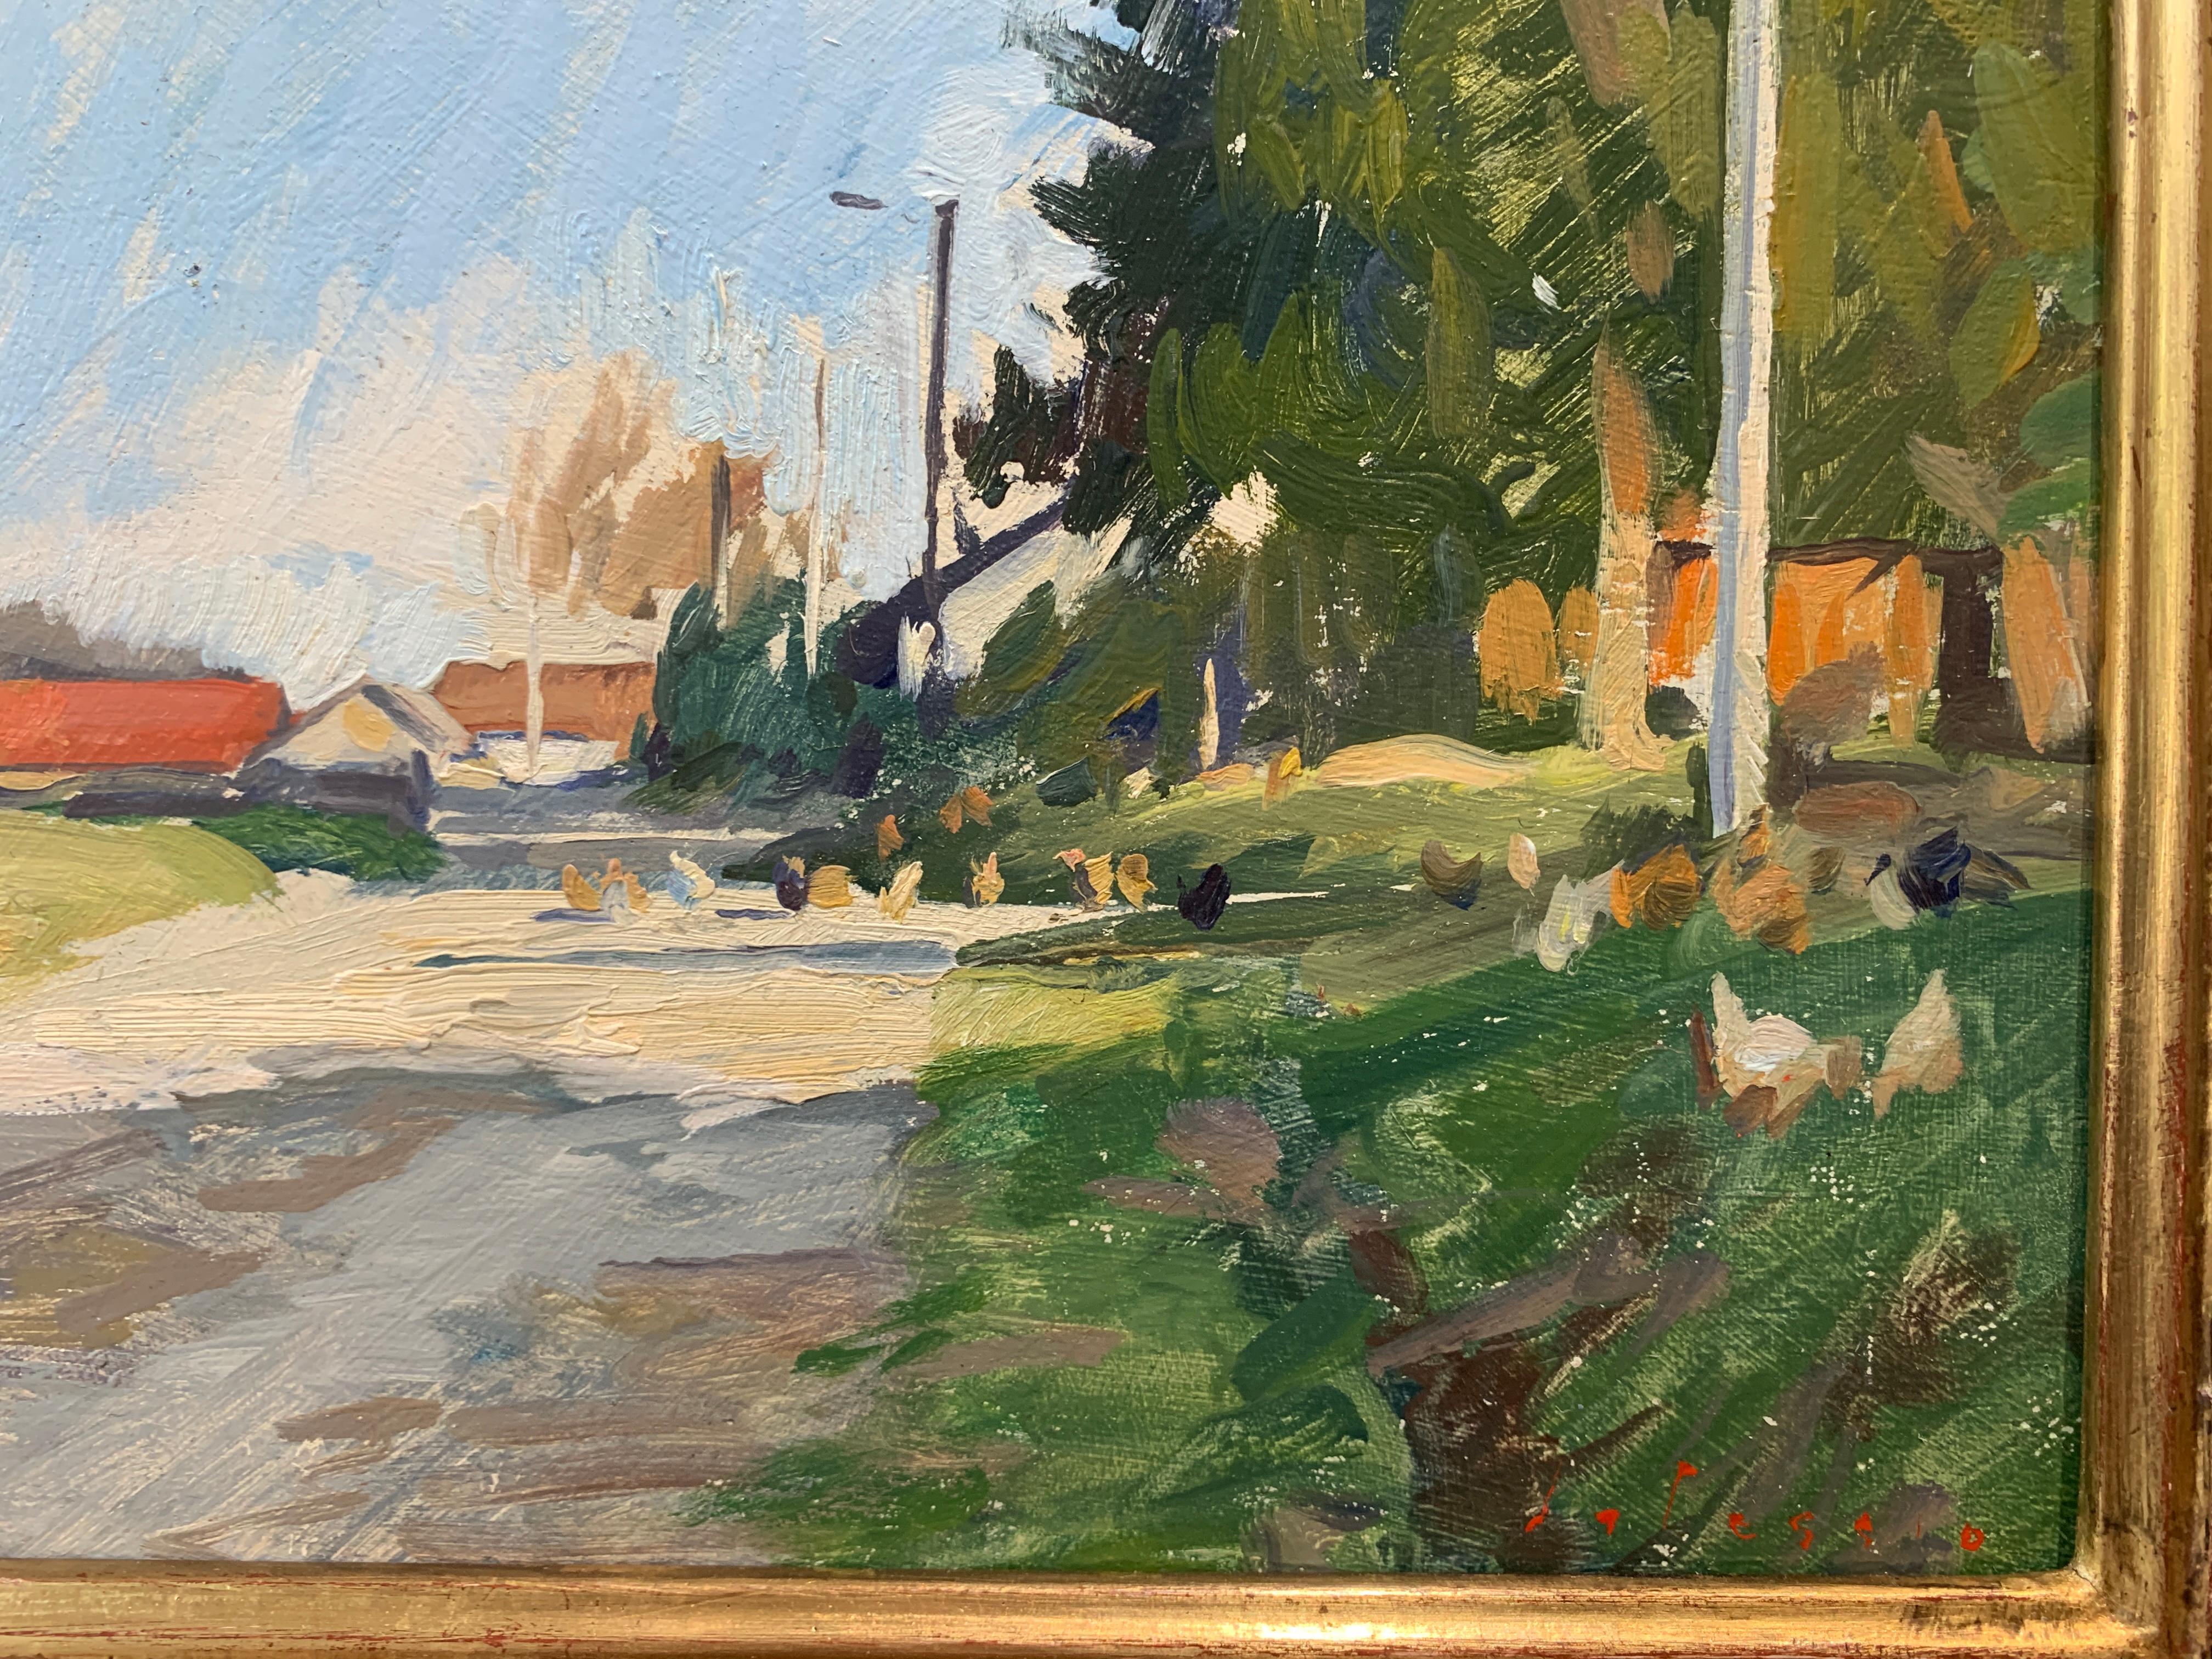 Ein Ölgemälde, gemalt en plein air, zeigt eine unbefestigte Landstraße mit einem Bauernhof in der Ferne. Auf der rechten Seite und am Ende der Straße sind Hühner zu sehen. Das Gemälde ist in einem handgefertigten italienischen Rahmen gerahmt,